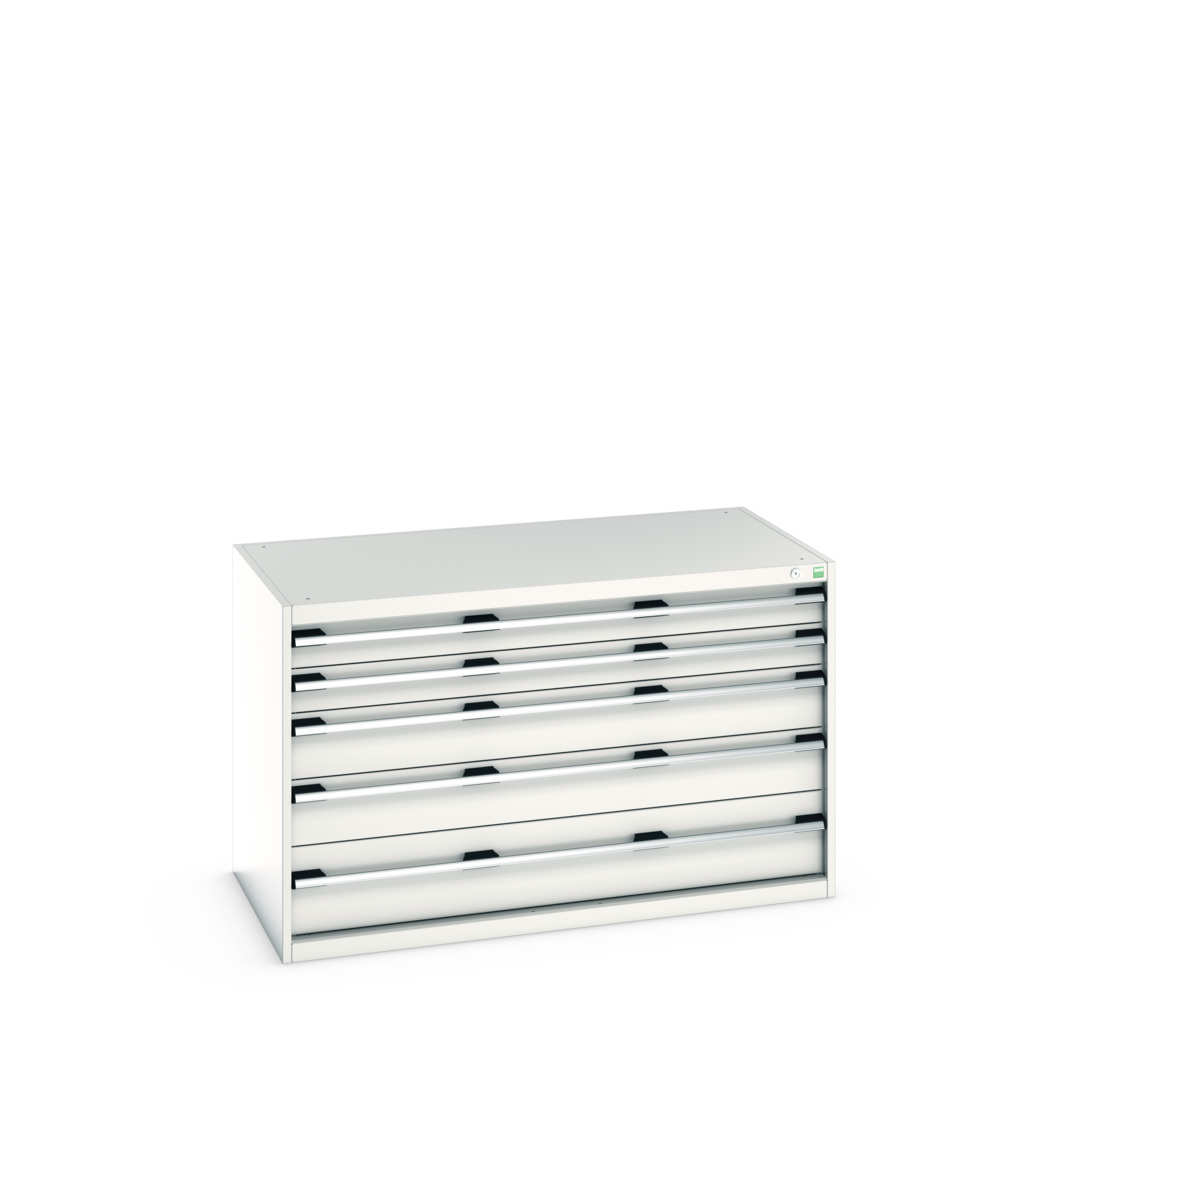 40030007.16V - cubio drawer cabinet